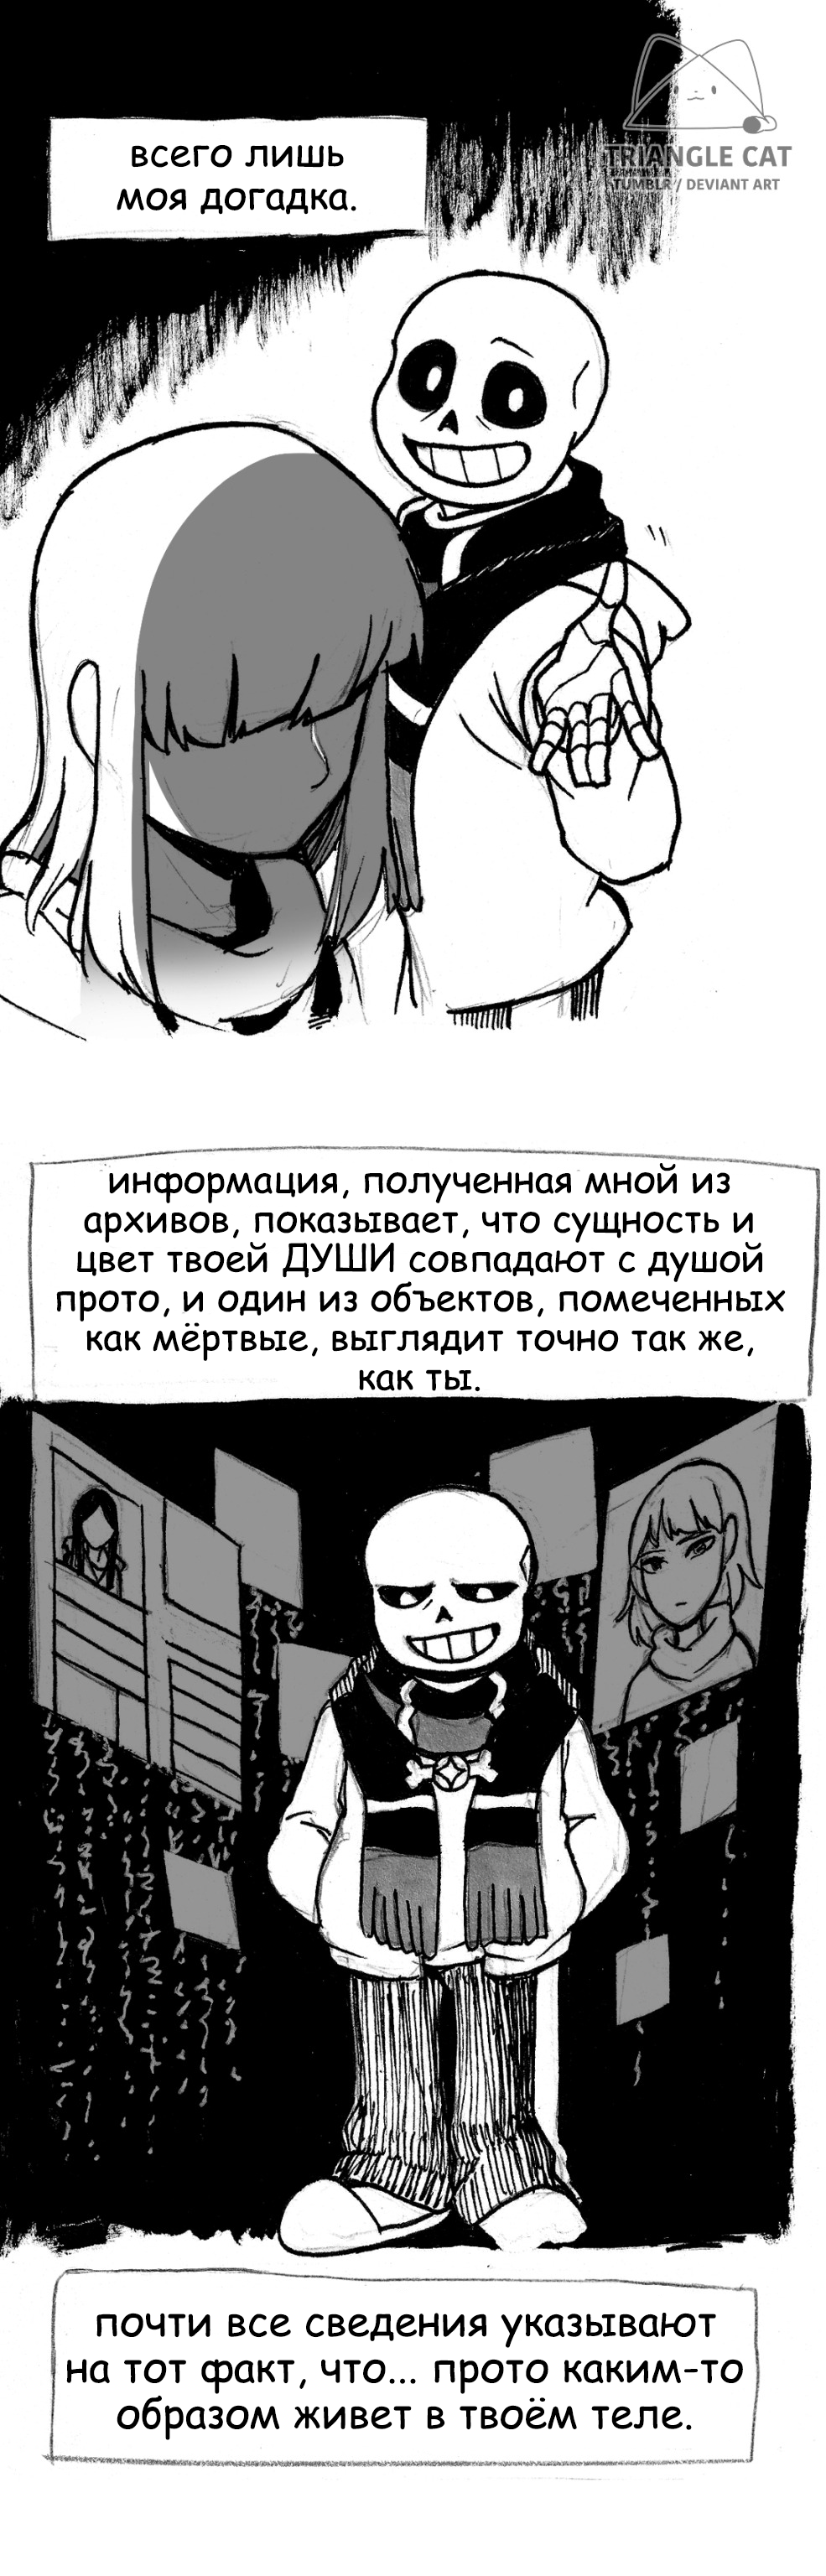 Глава 5, страница 127.1 комикс Подмена [Stand-In] на русском читать .